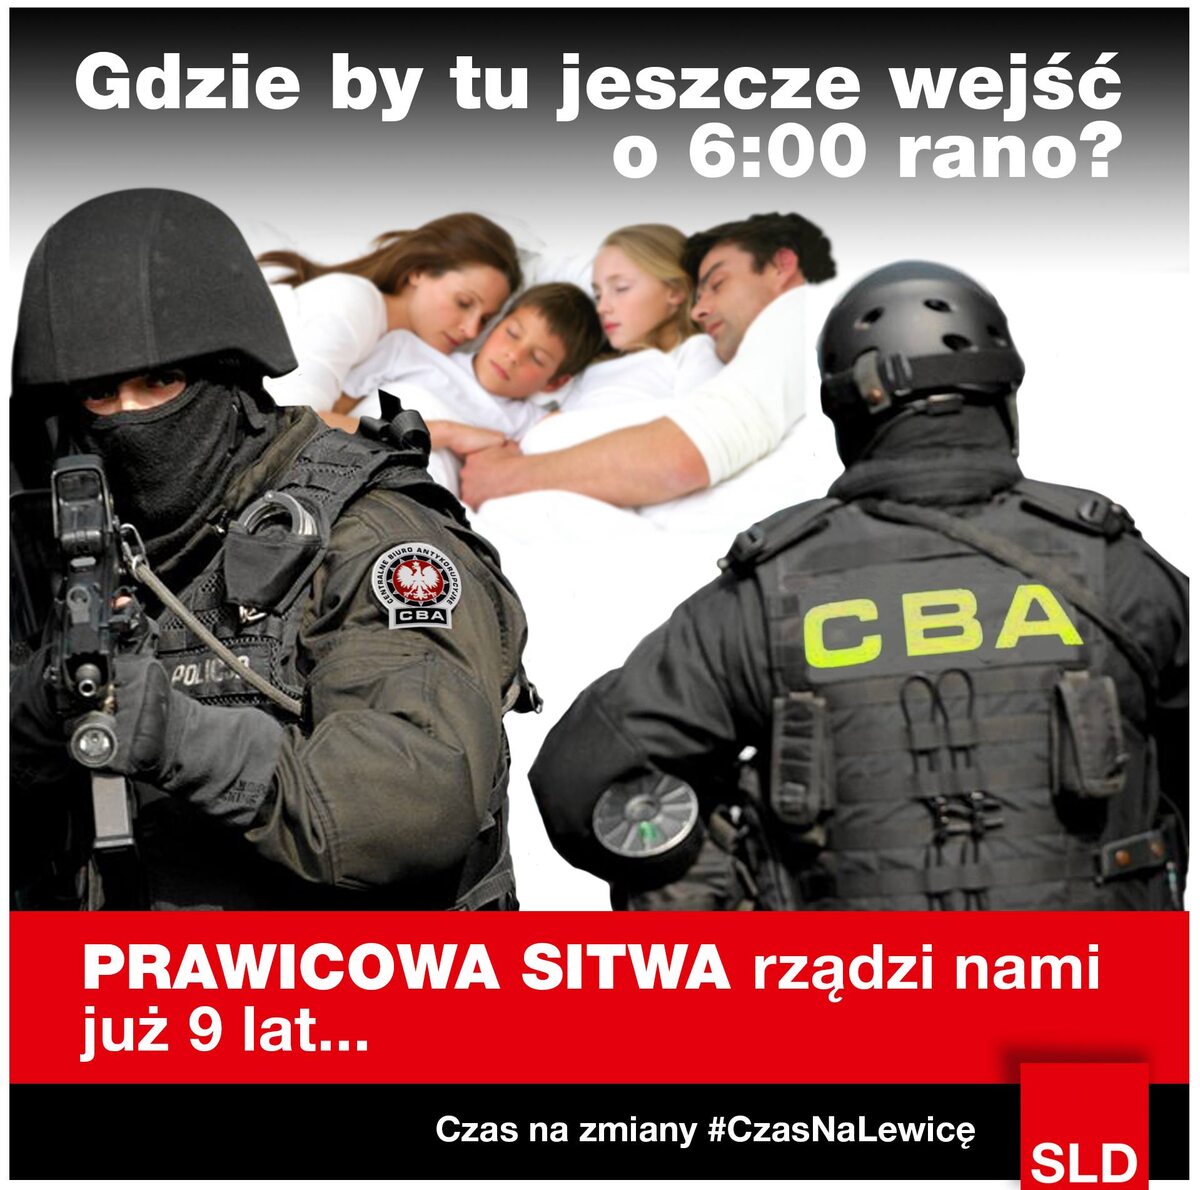 fot.sld.org.pl